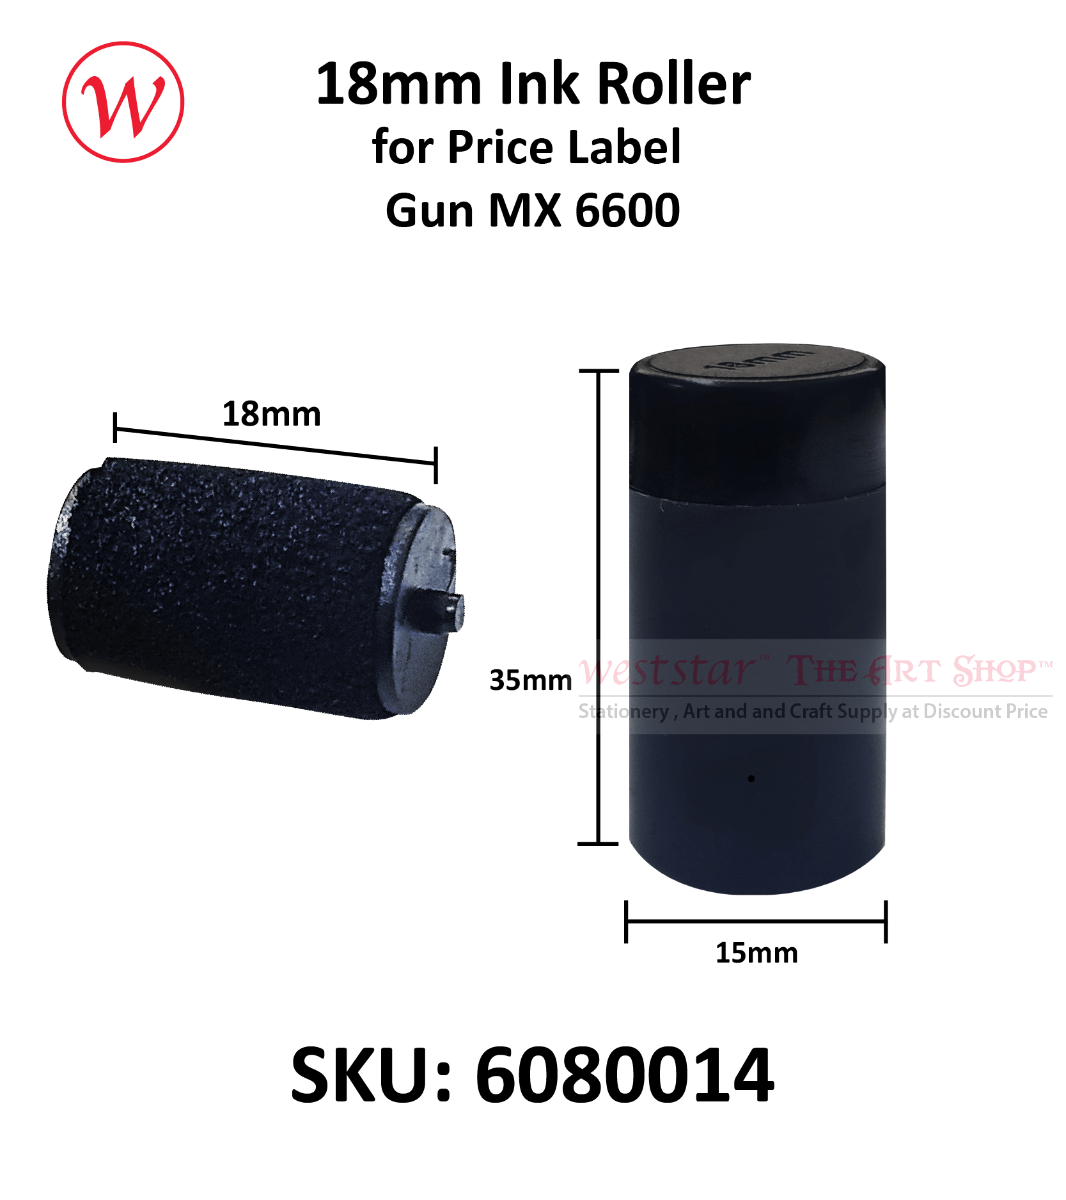 18mm Ink Roller for MX6600